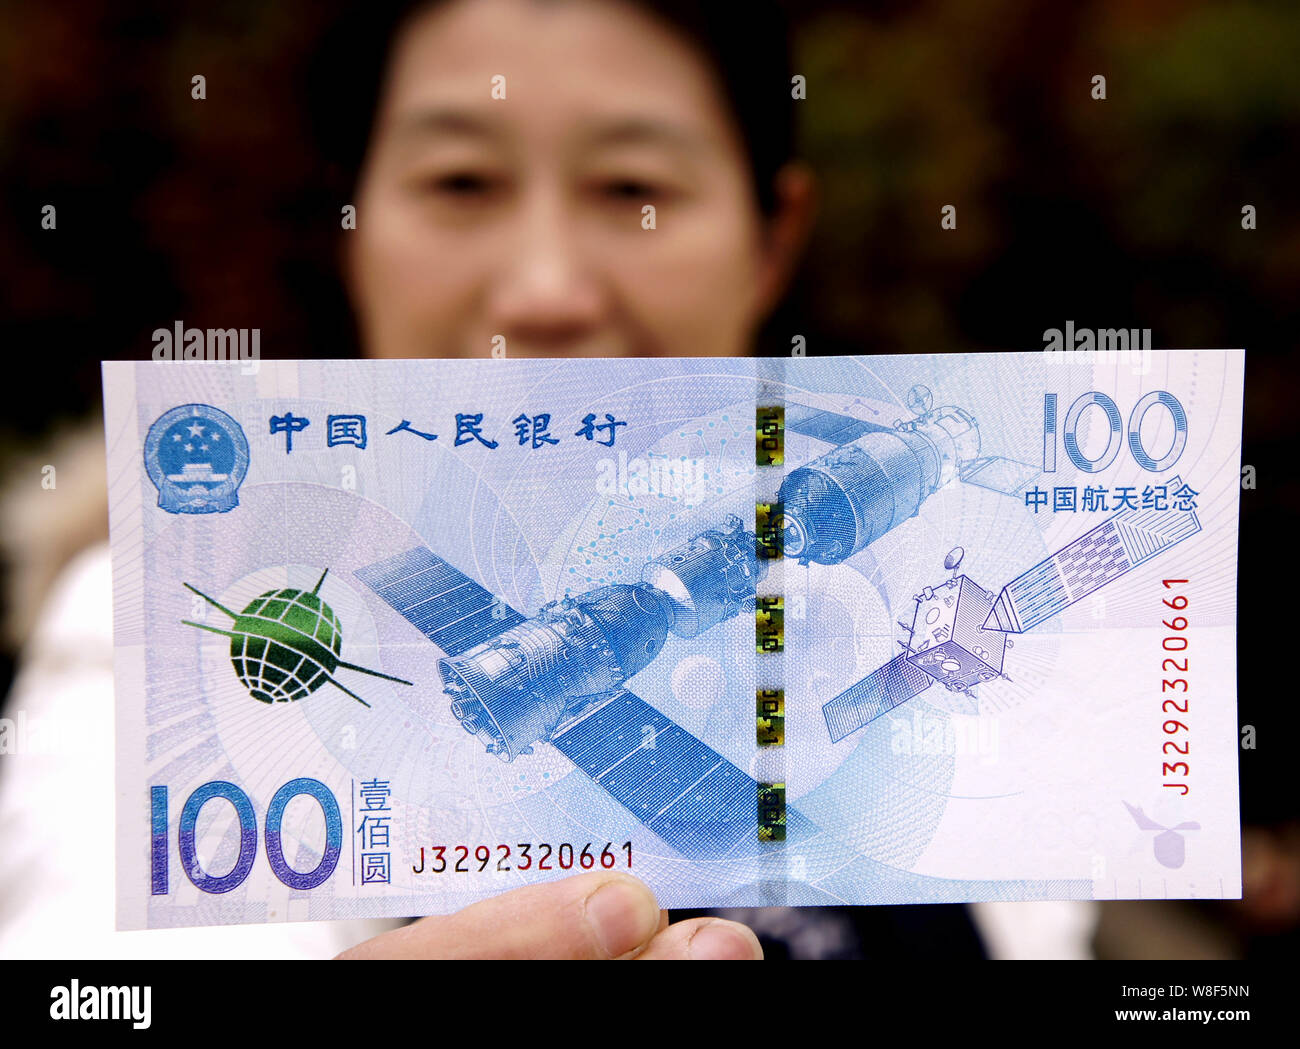 China Aerospace 60th Anniversary Banknote 50 Yuan